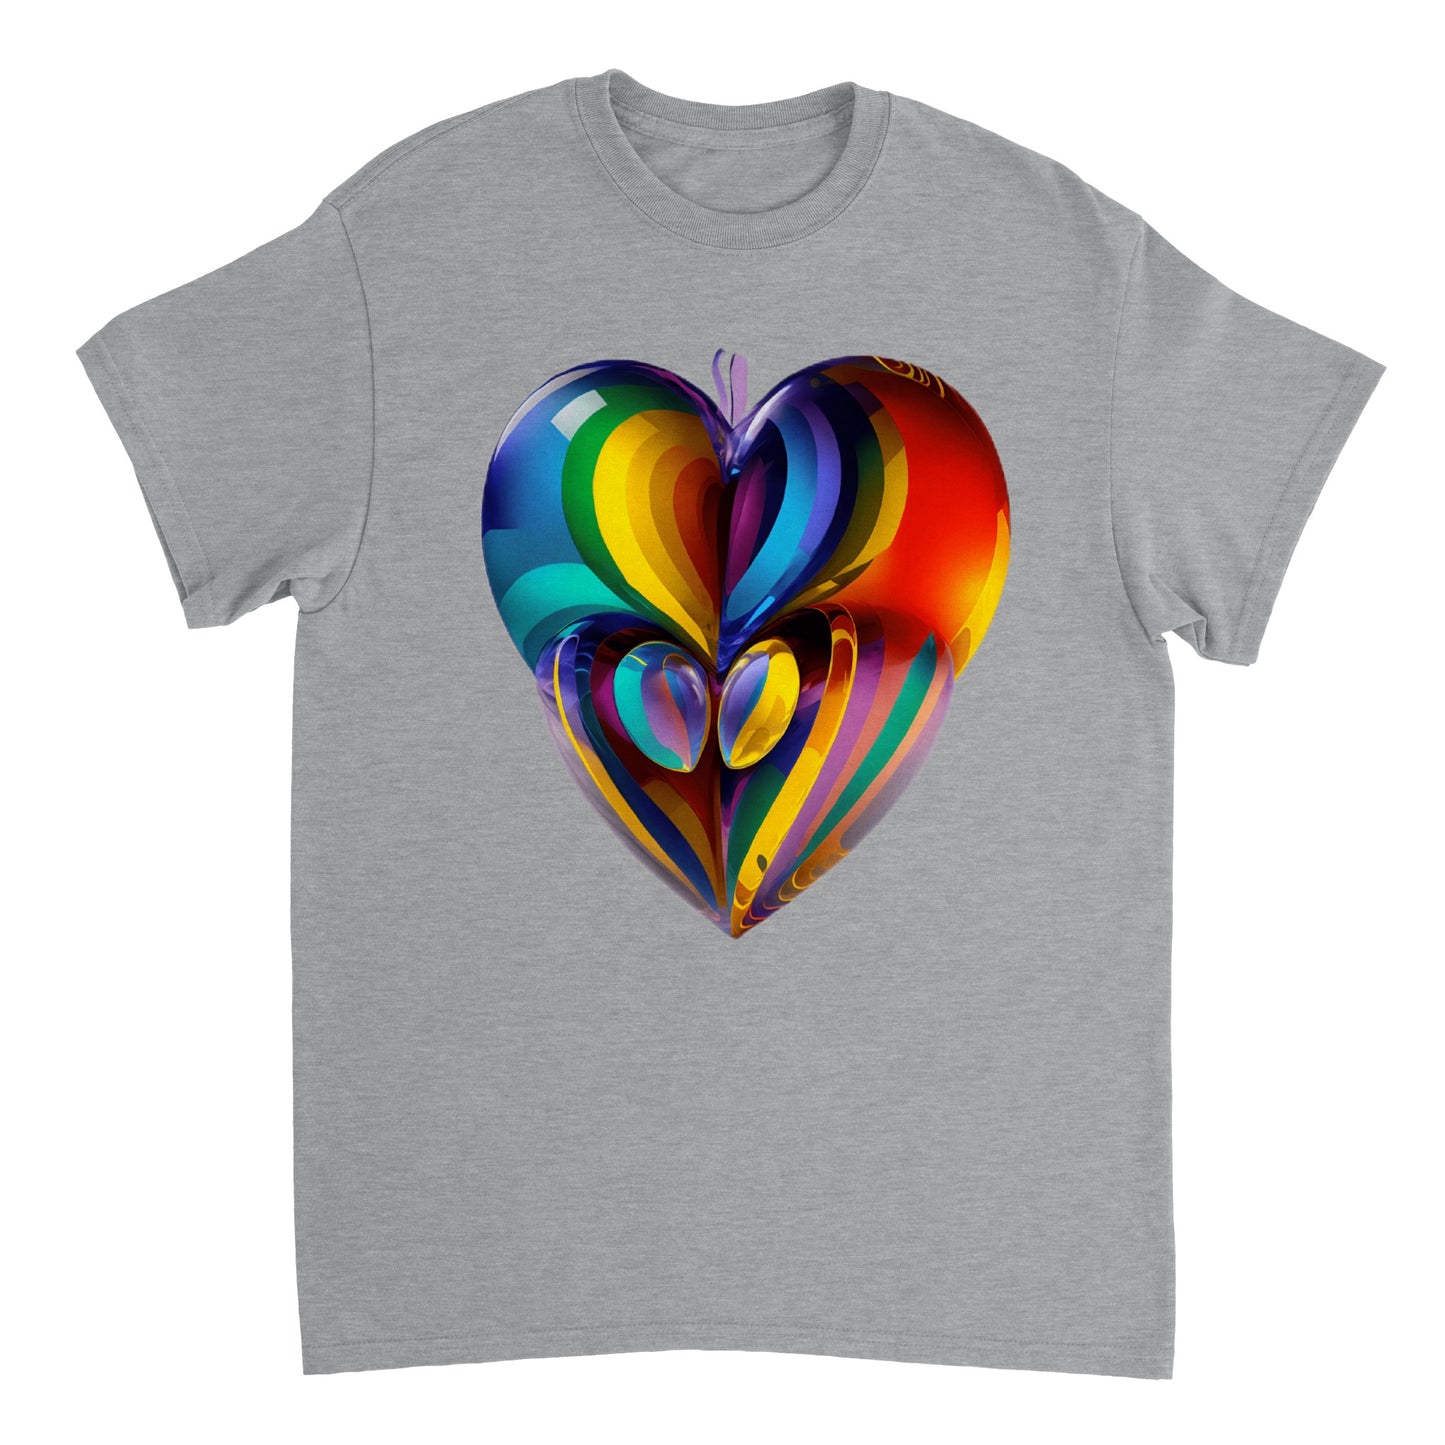 Love Heart - Heavyweight Unisex Crewneck T-shirt 16